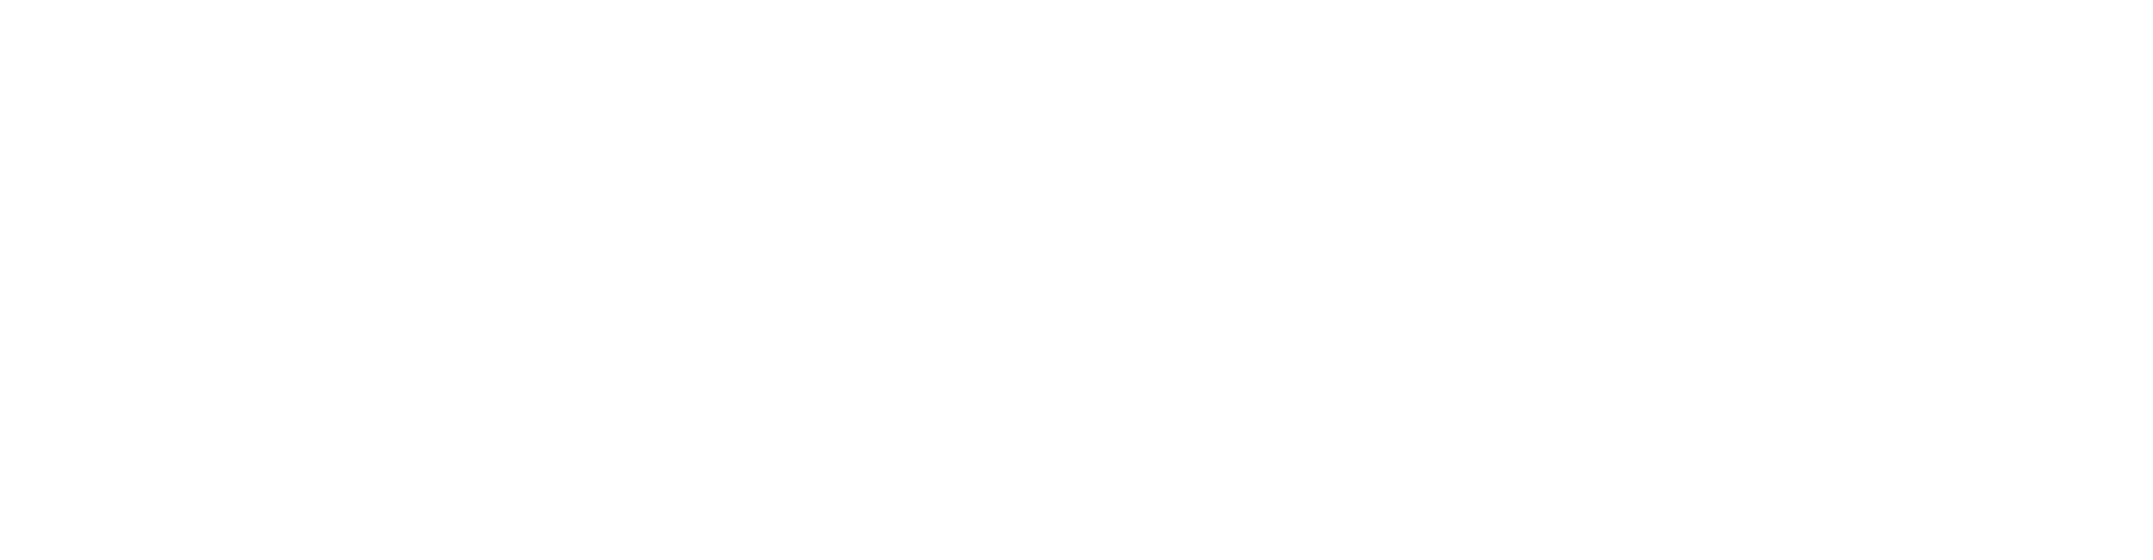 Palmetto Dental Studio